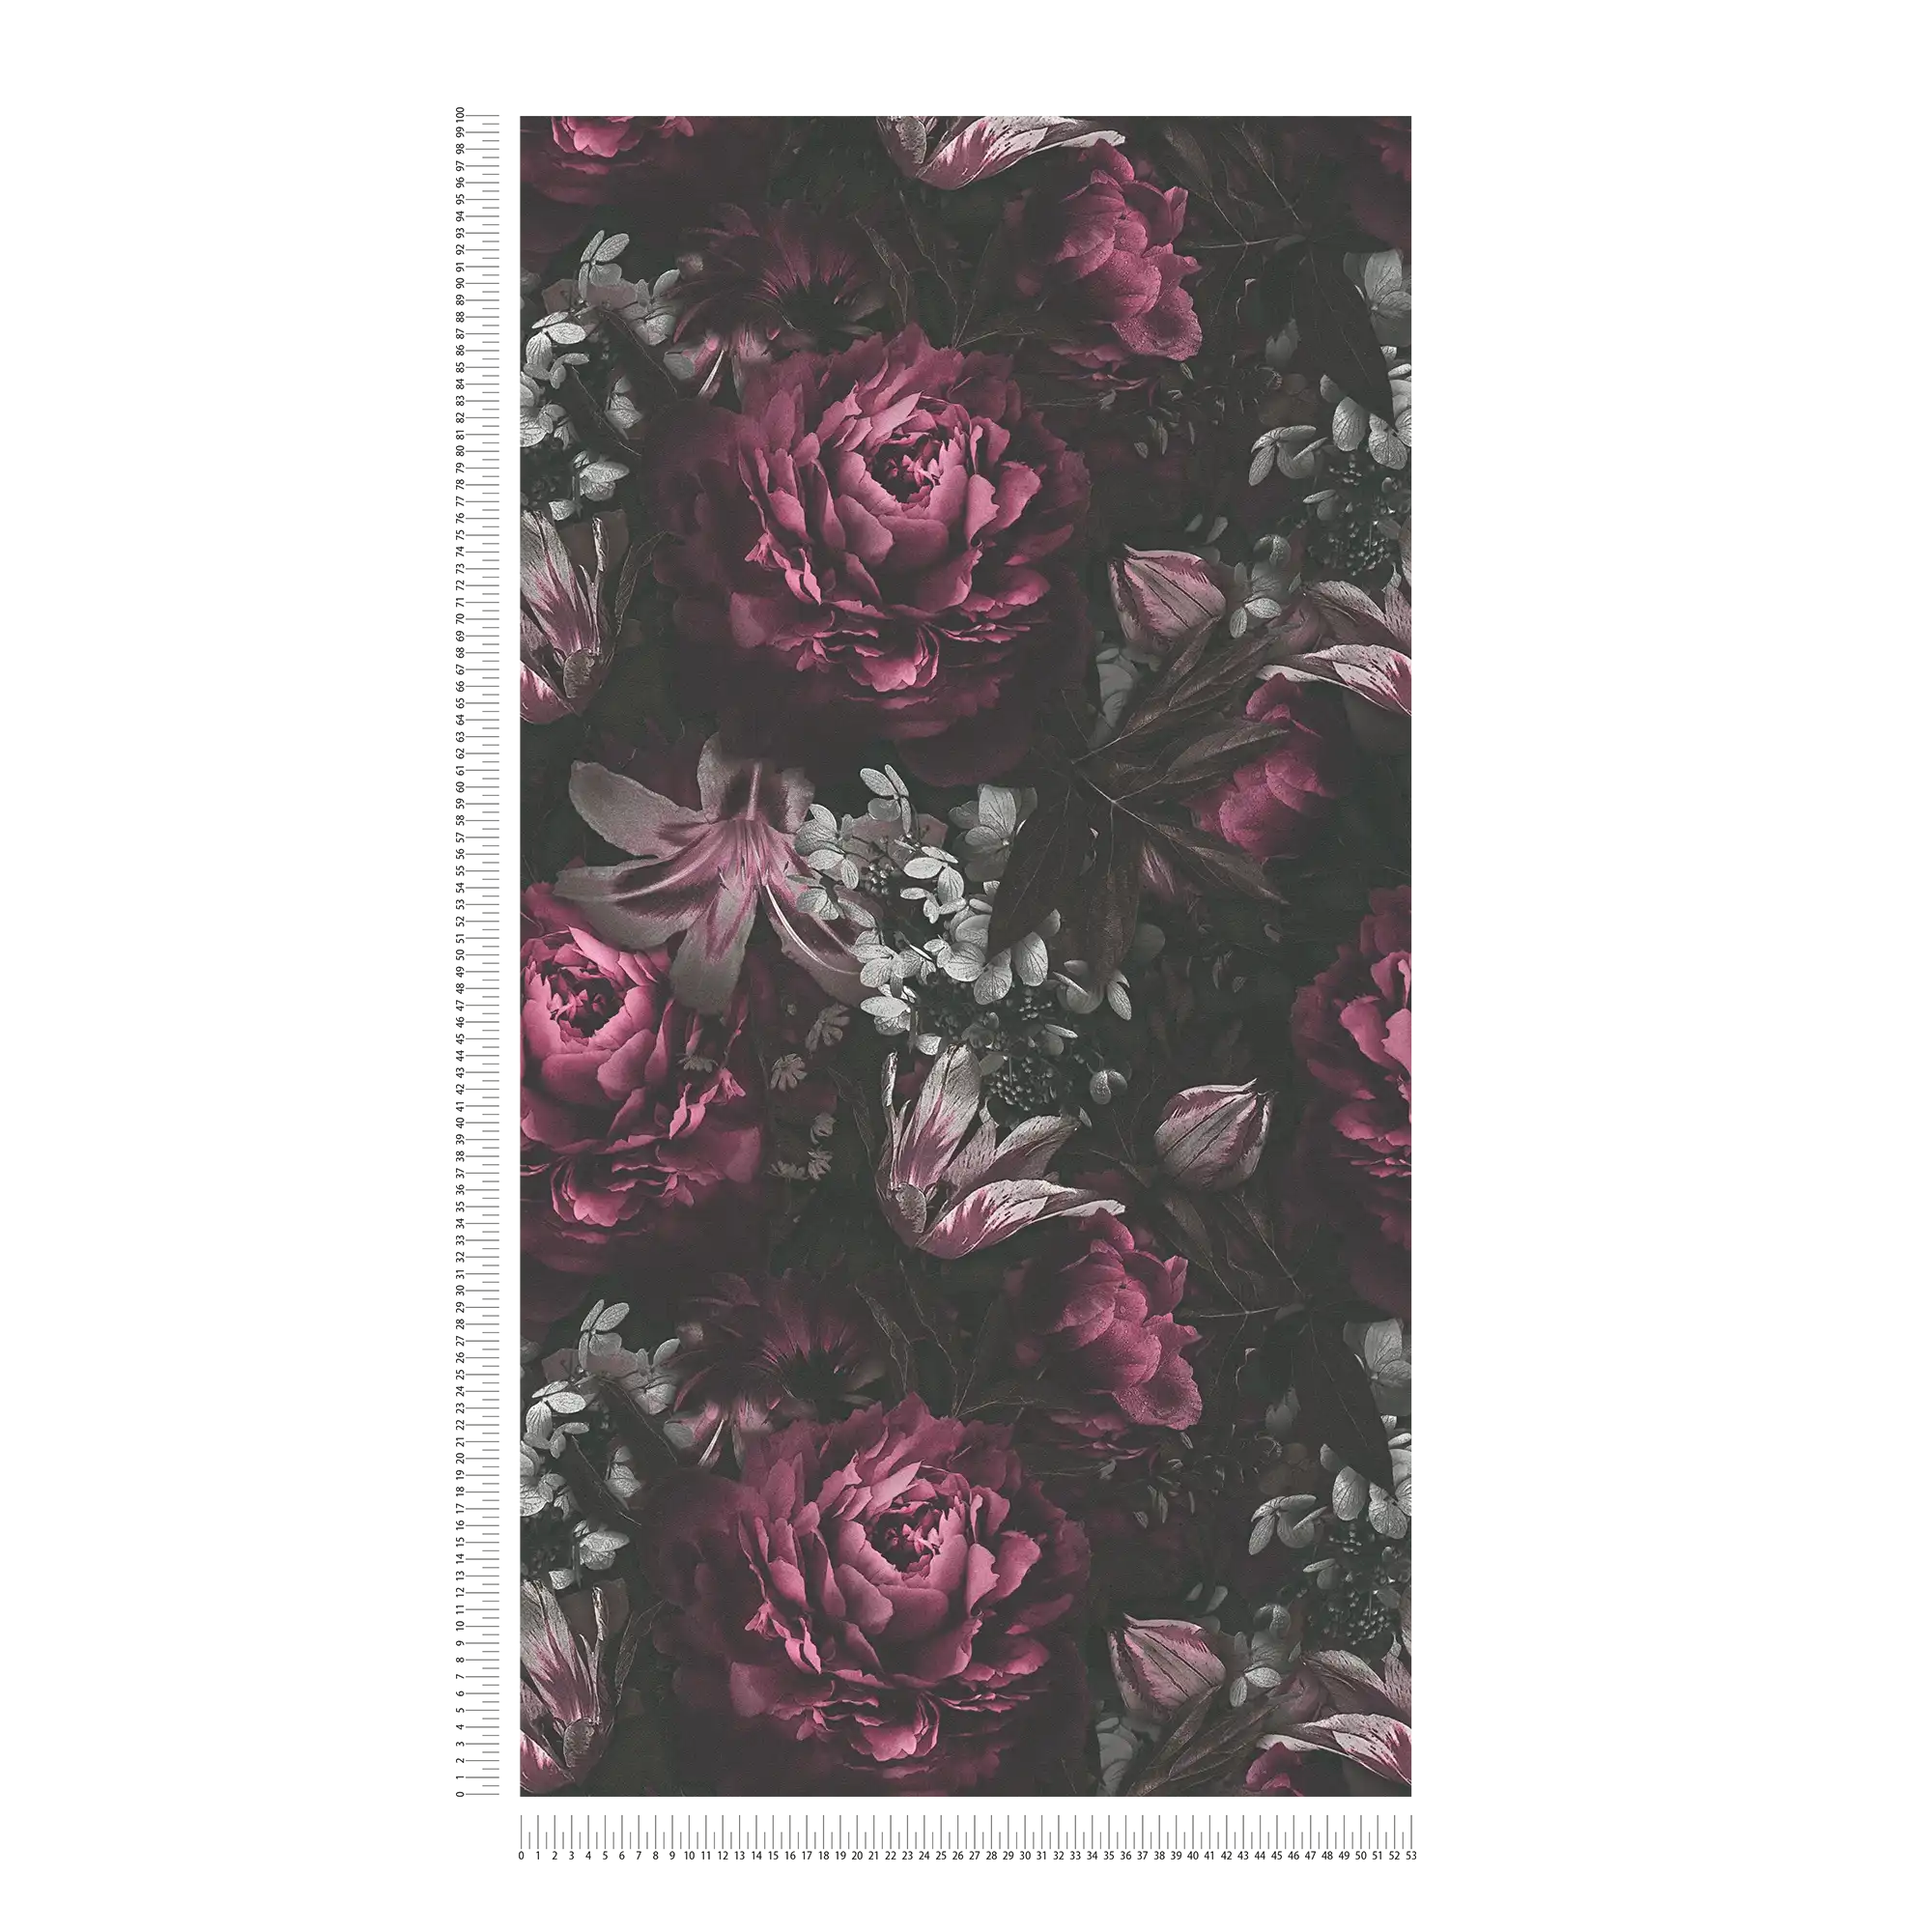             papel pintado rosas y tulipanes en estilo clásico - rosa, gris
        